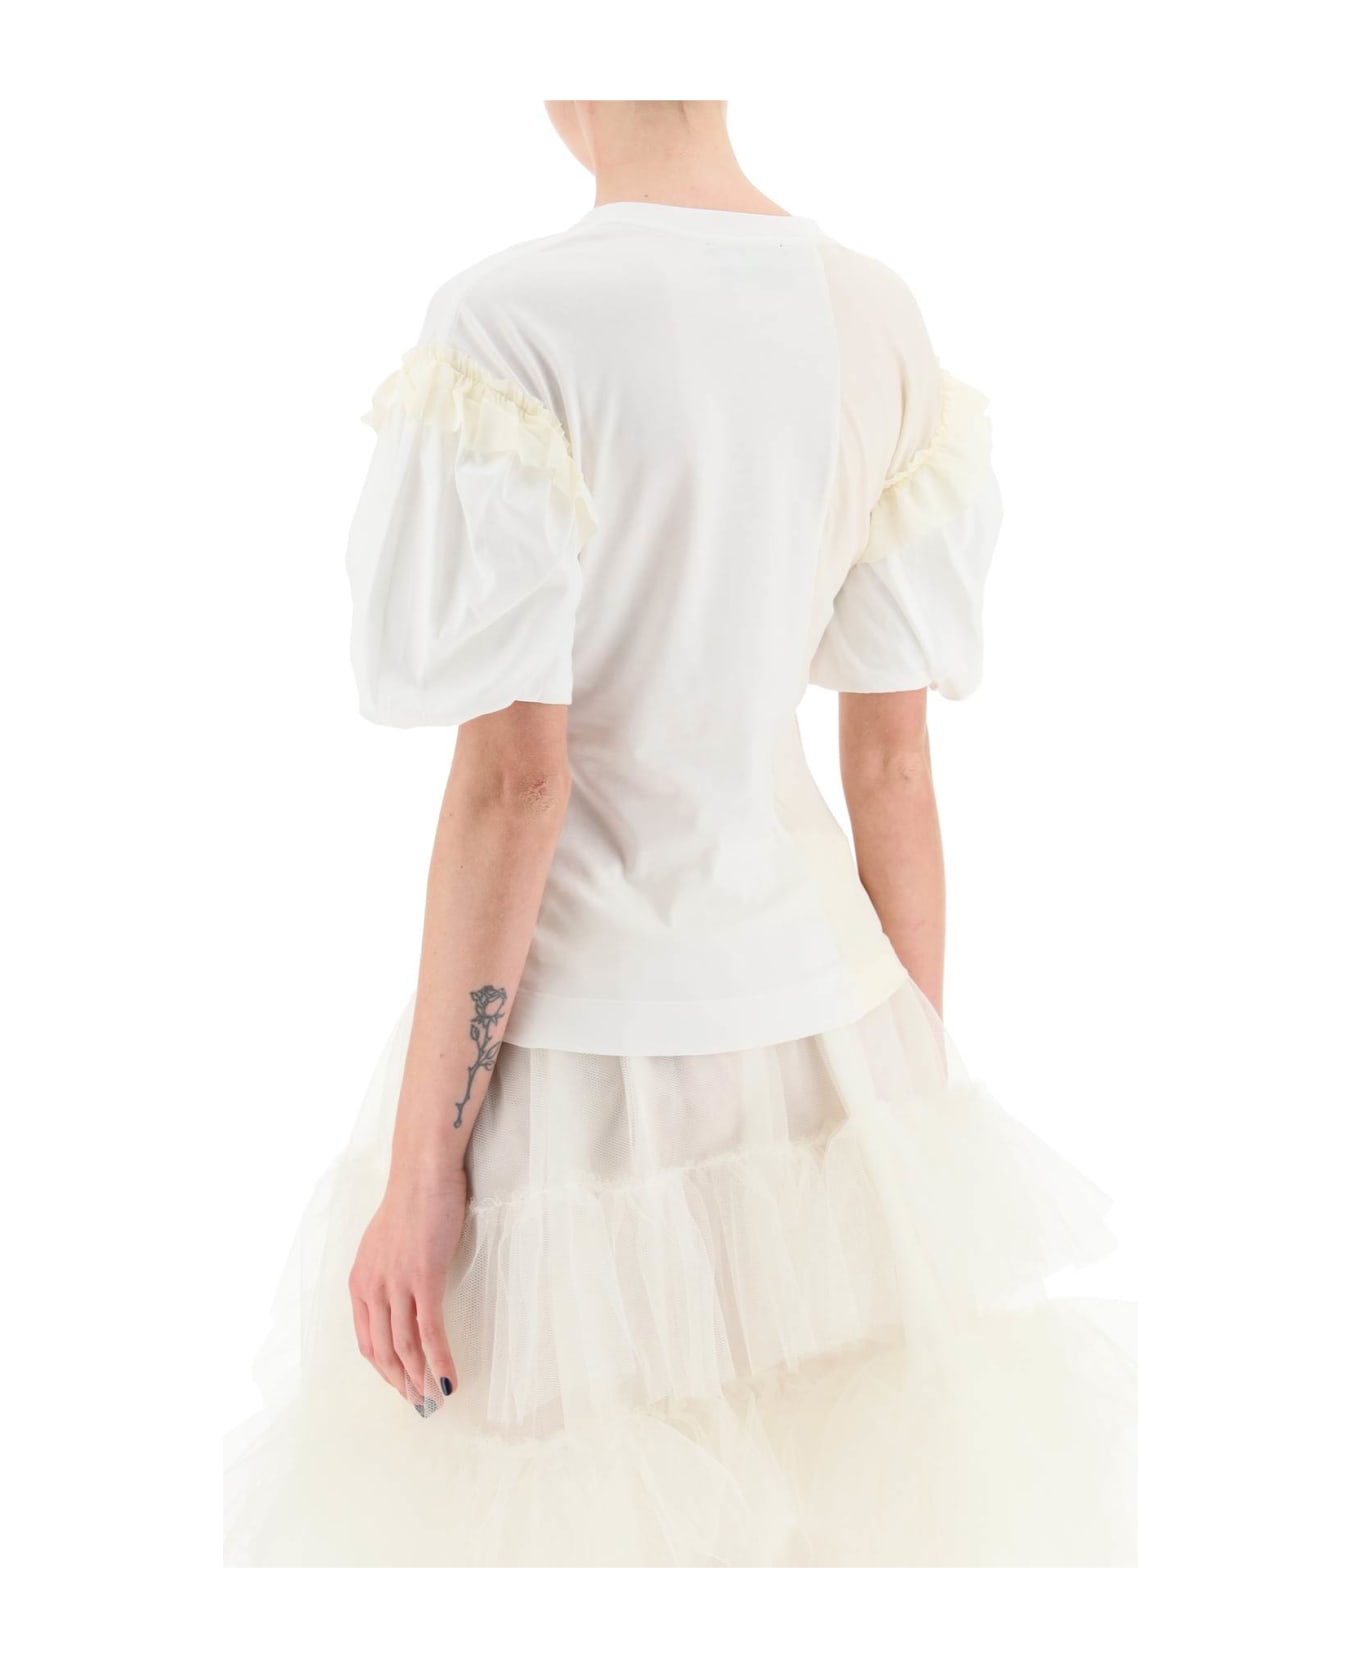 Simone Rocha Ruffled Jersey And Organdie T-shirt - WHITE CREAM (White)